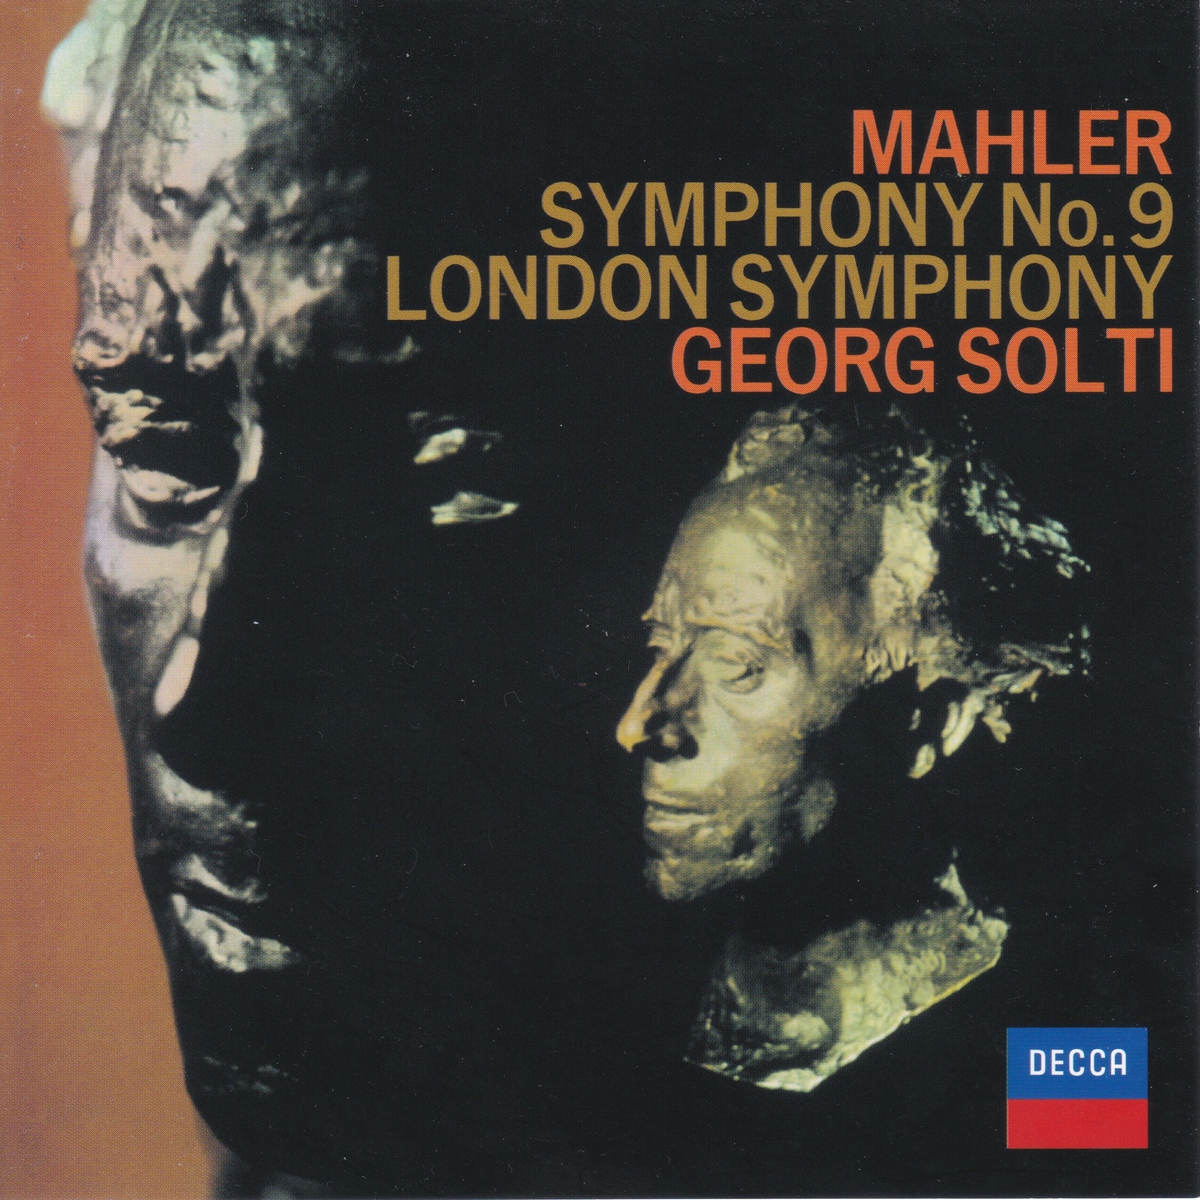 ショルティのマーラー交響曲第9番の旧録音 ボルテージの高いロンドン響 